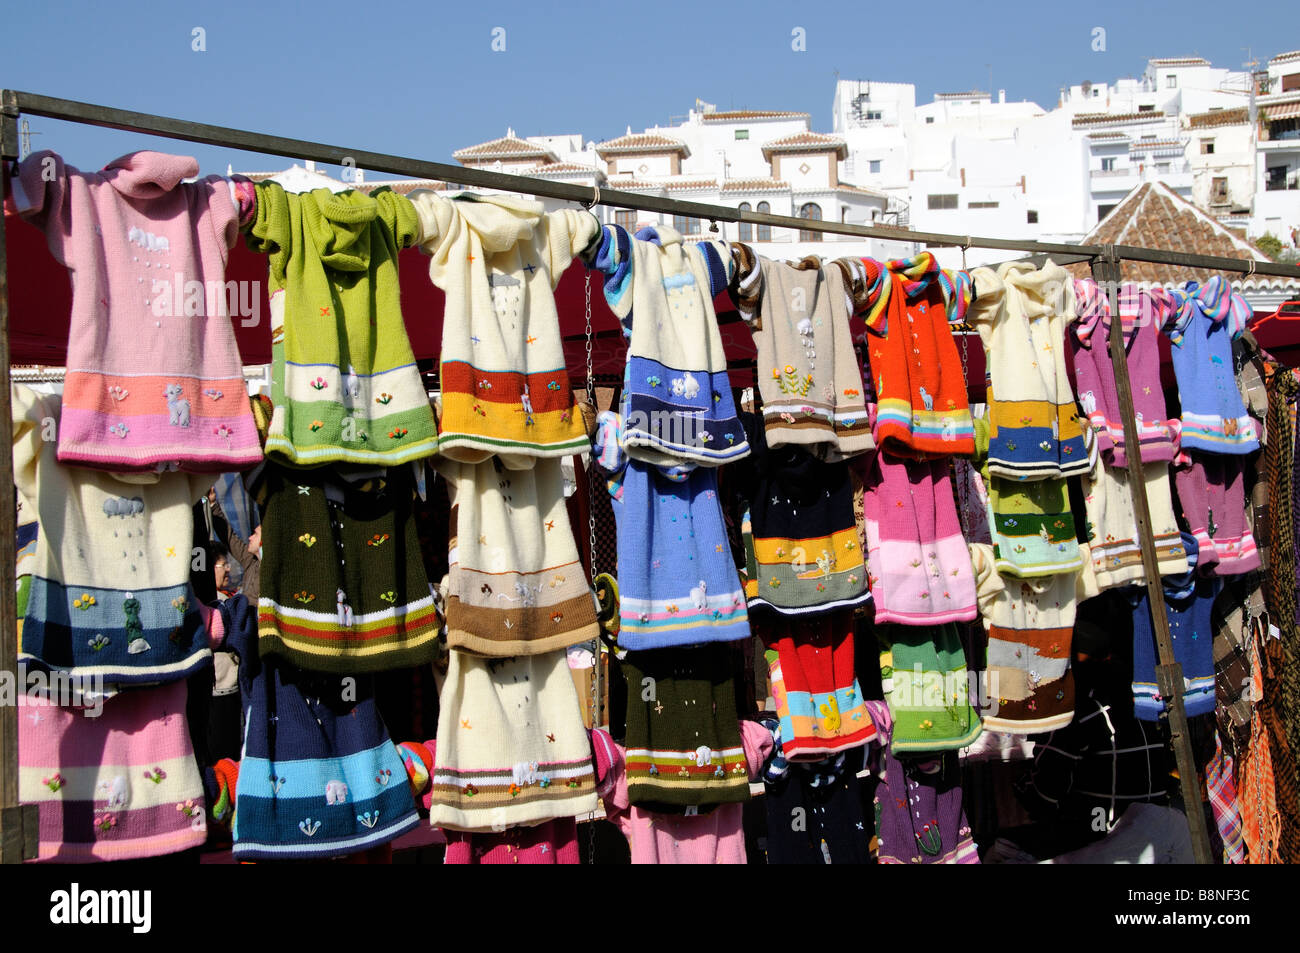 Farbenfrohe Kinderkleidung für den Verkauf auf einem Marktstand in  Frigiliana Stadtzentrum Süd-Spanien Stockfotografie - Alamy